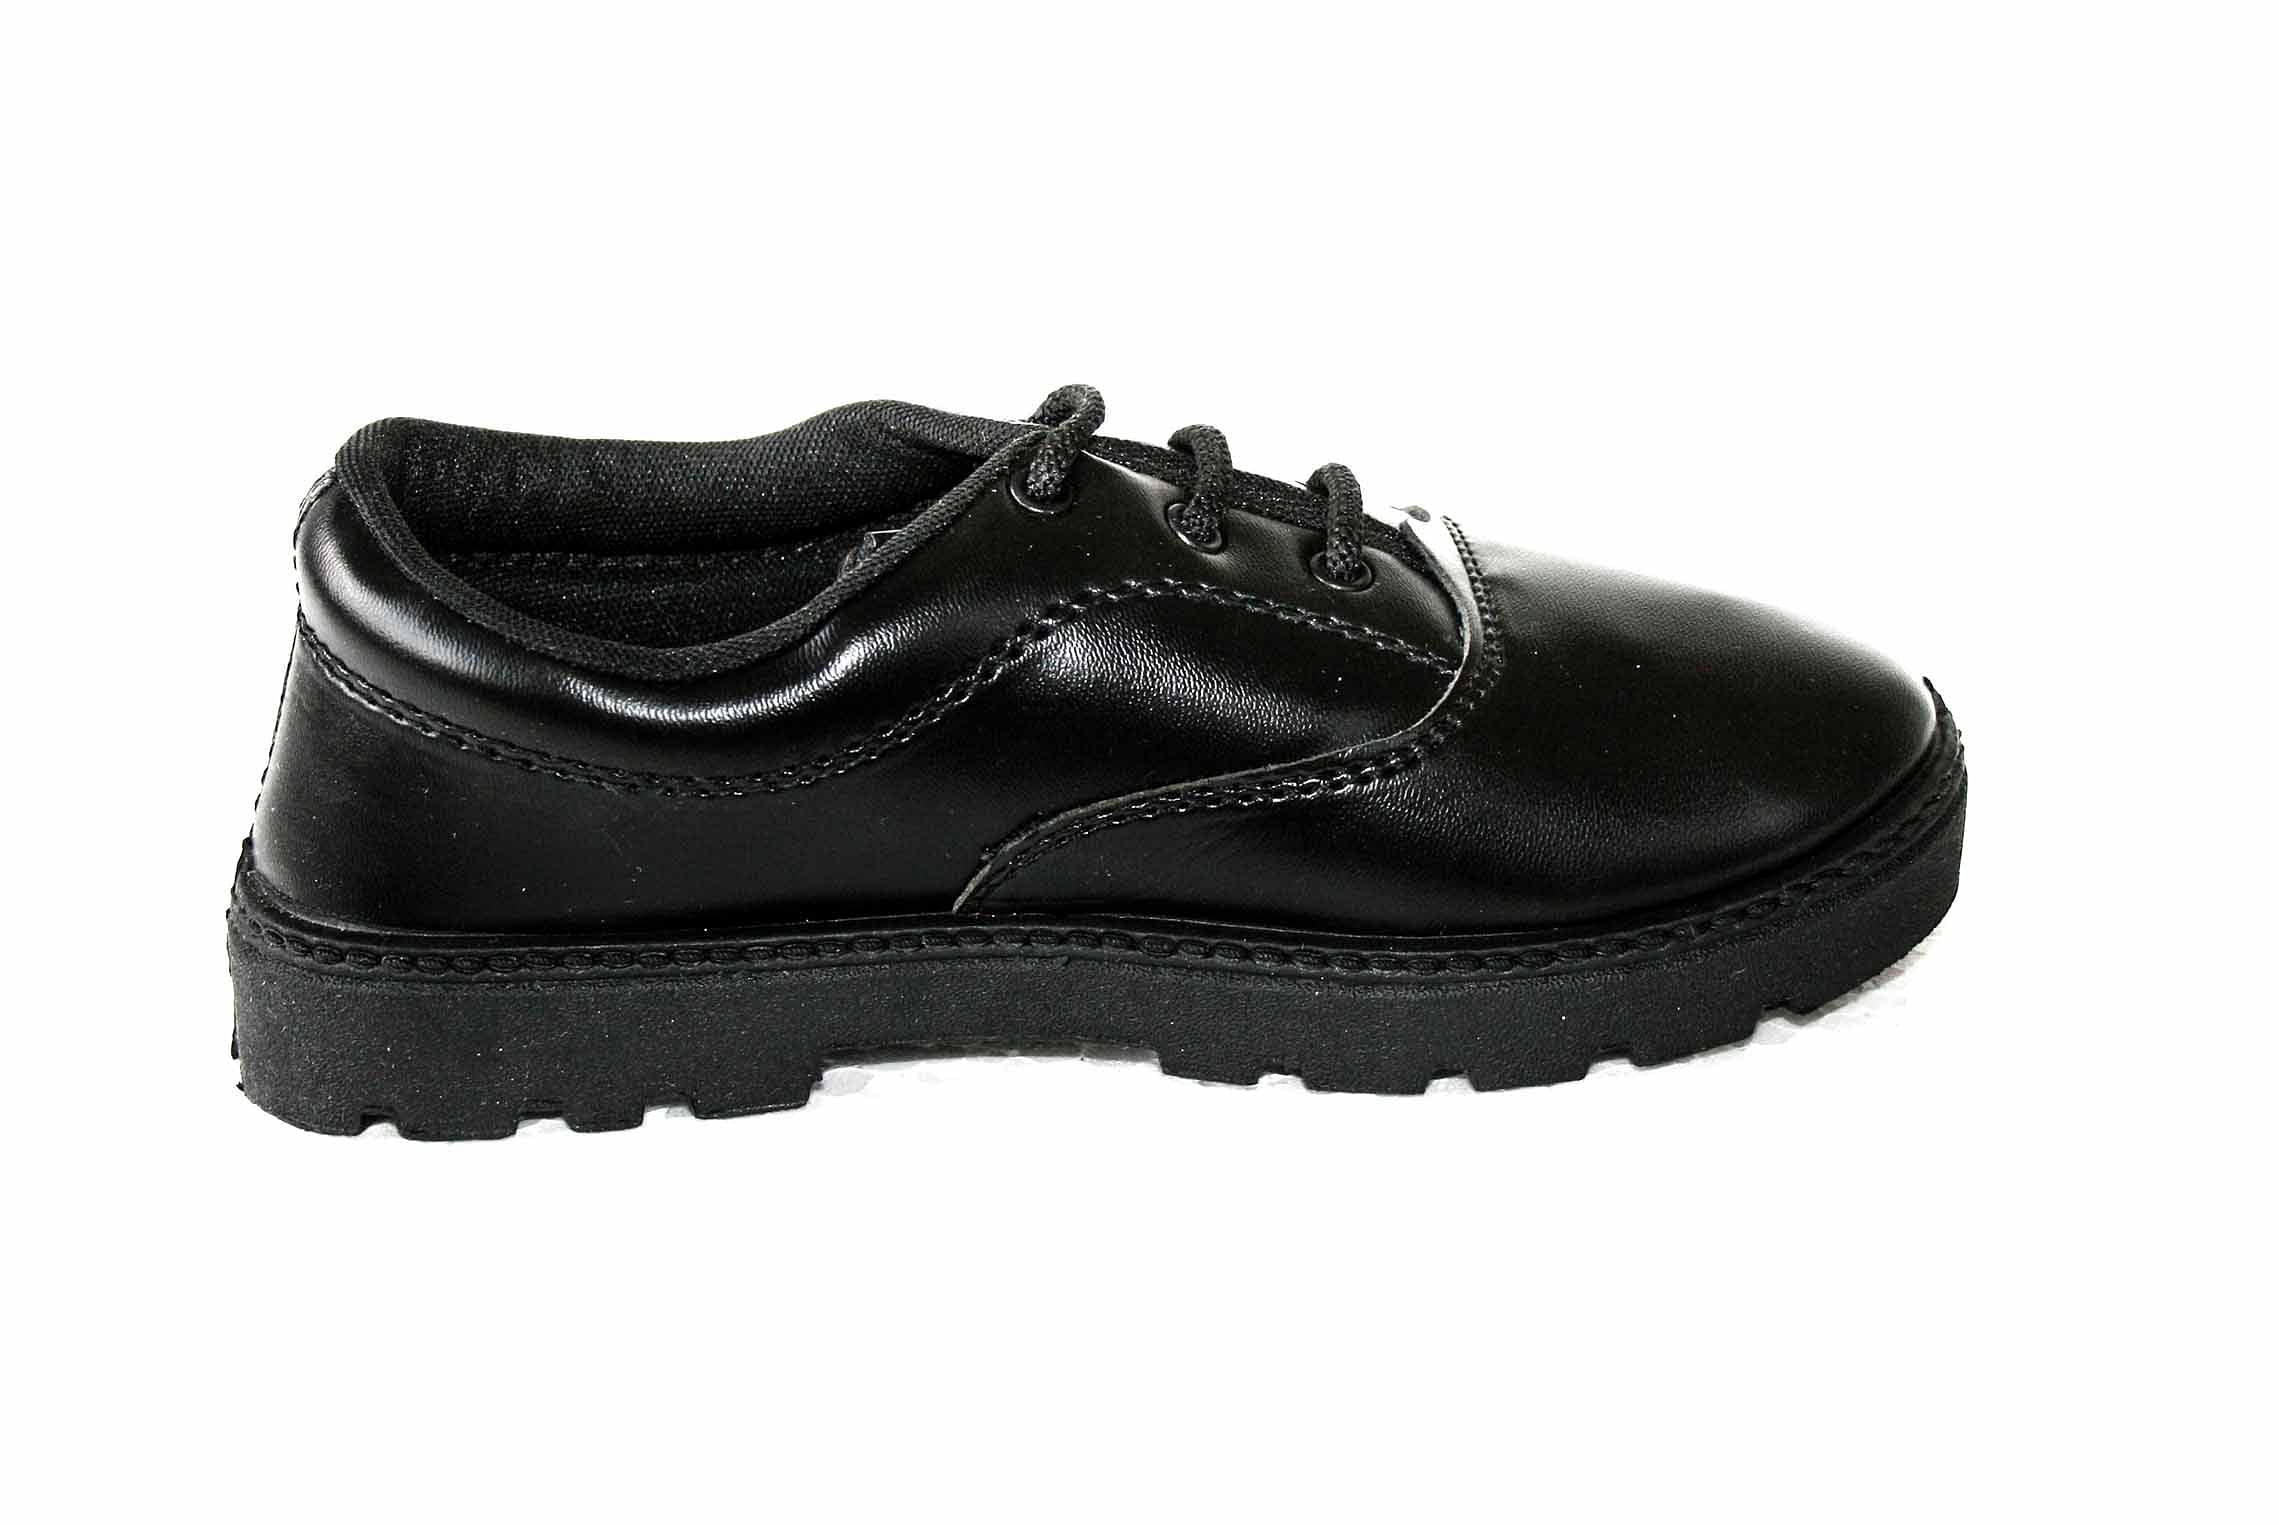 Pair-it Boys PVC School Shoe - Size- 6 - Color Black